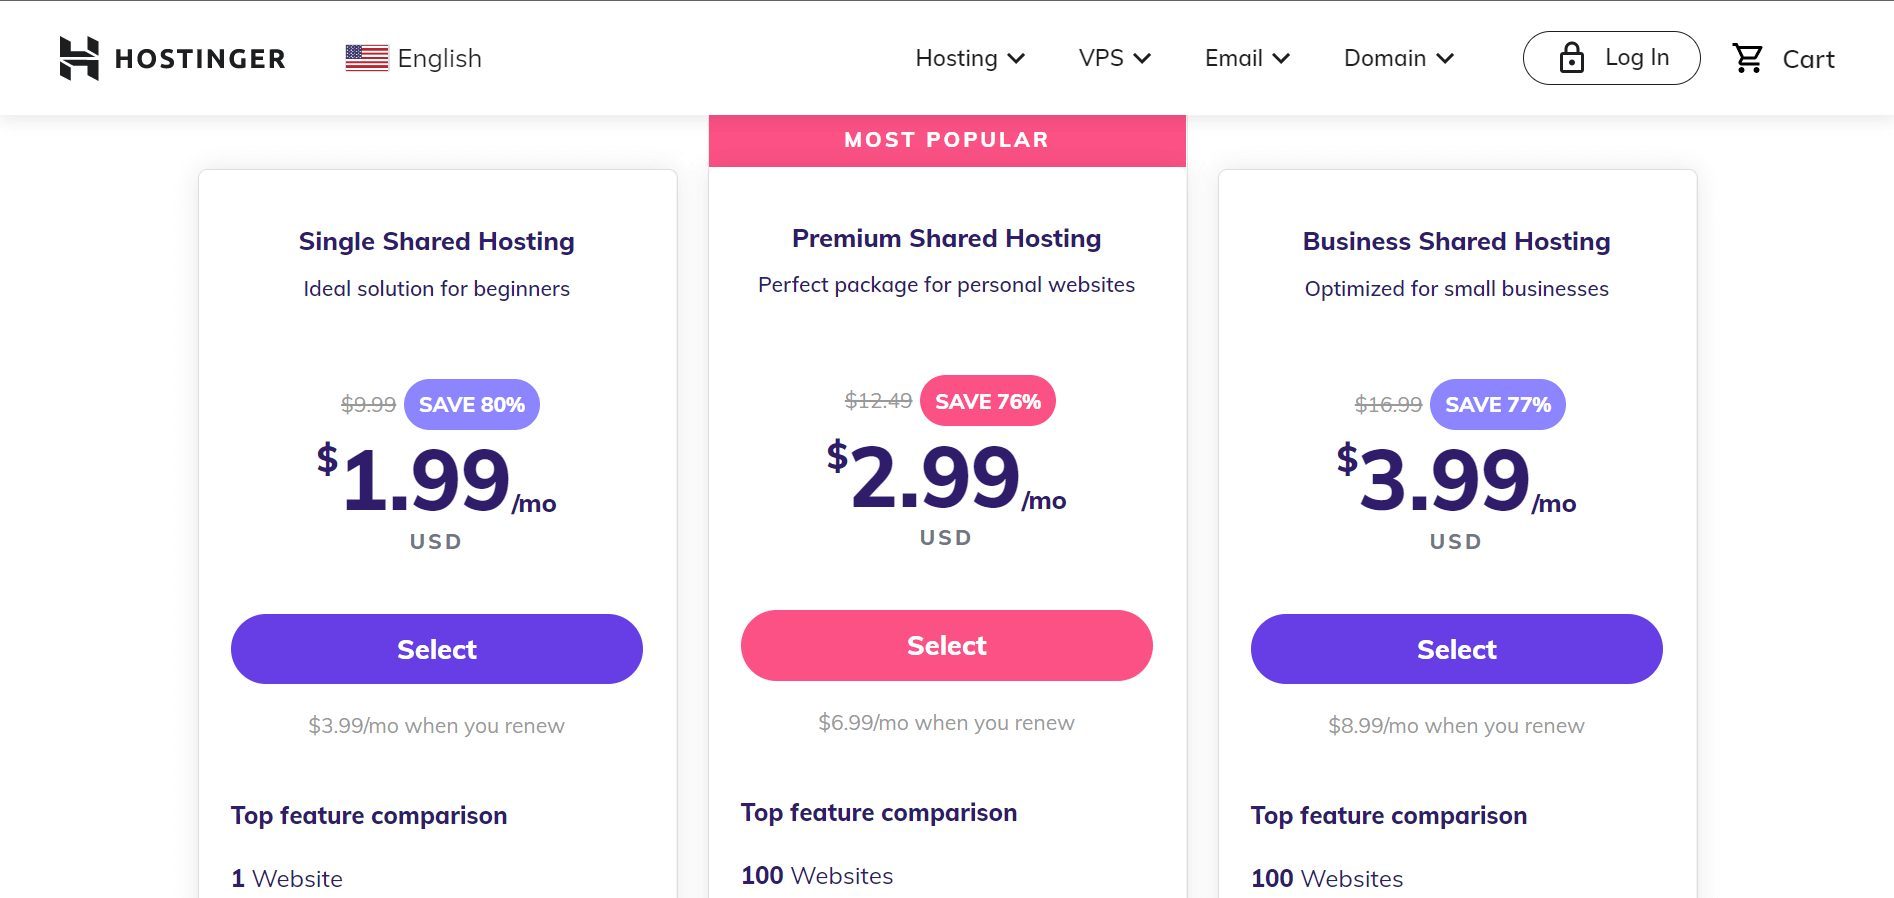 Hostinger Pricing - Best Web Hosting Service for 2022